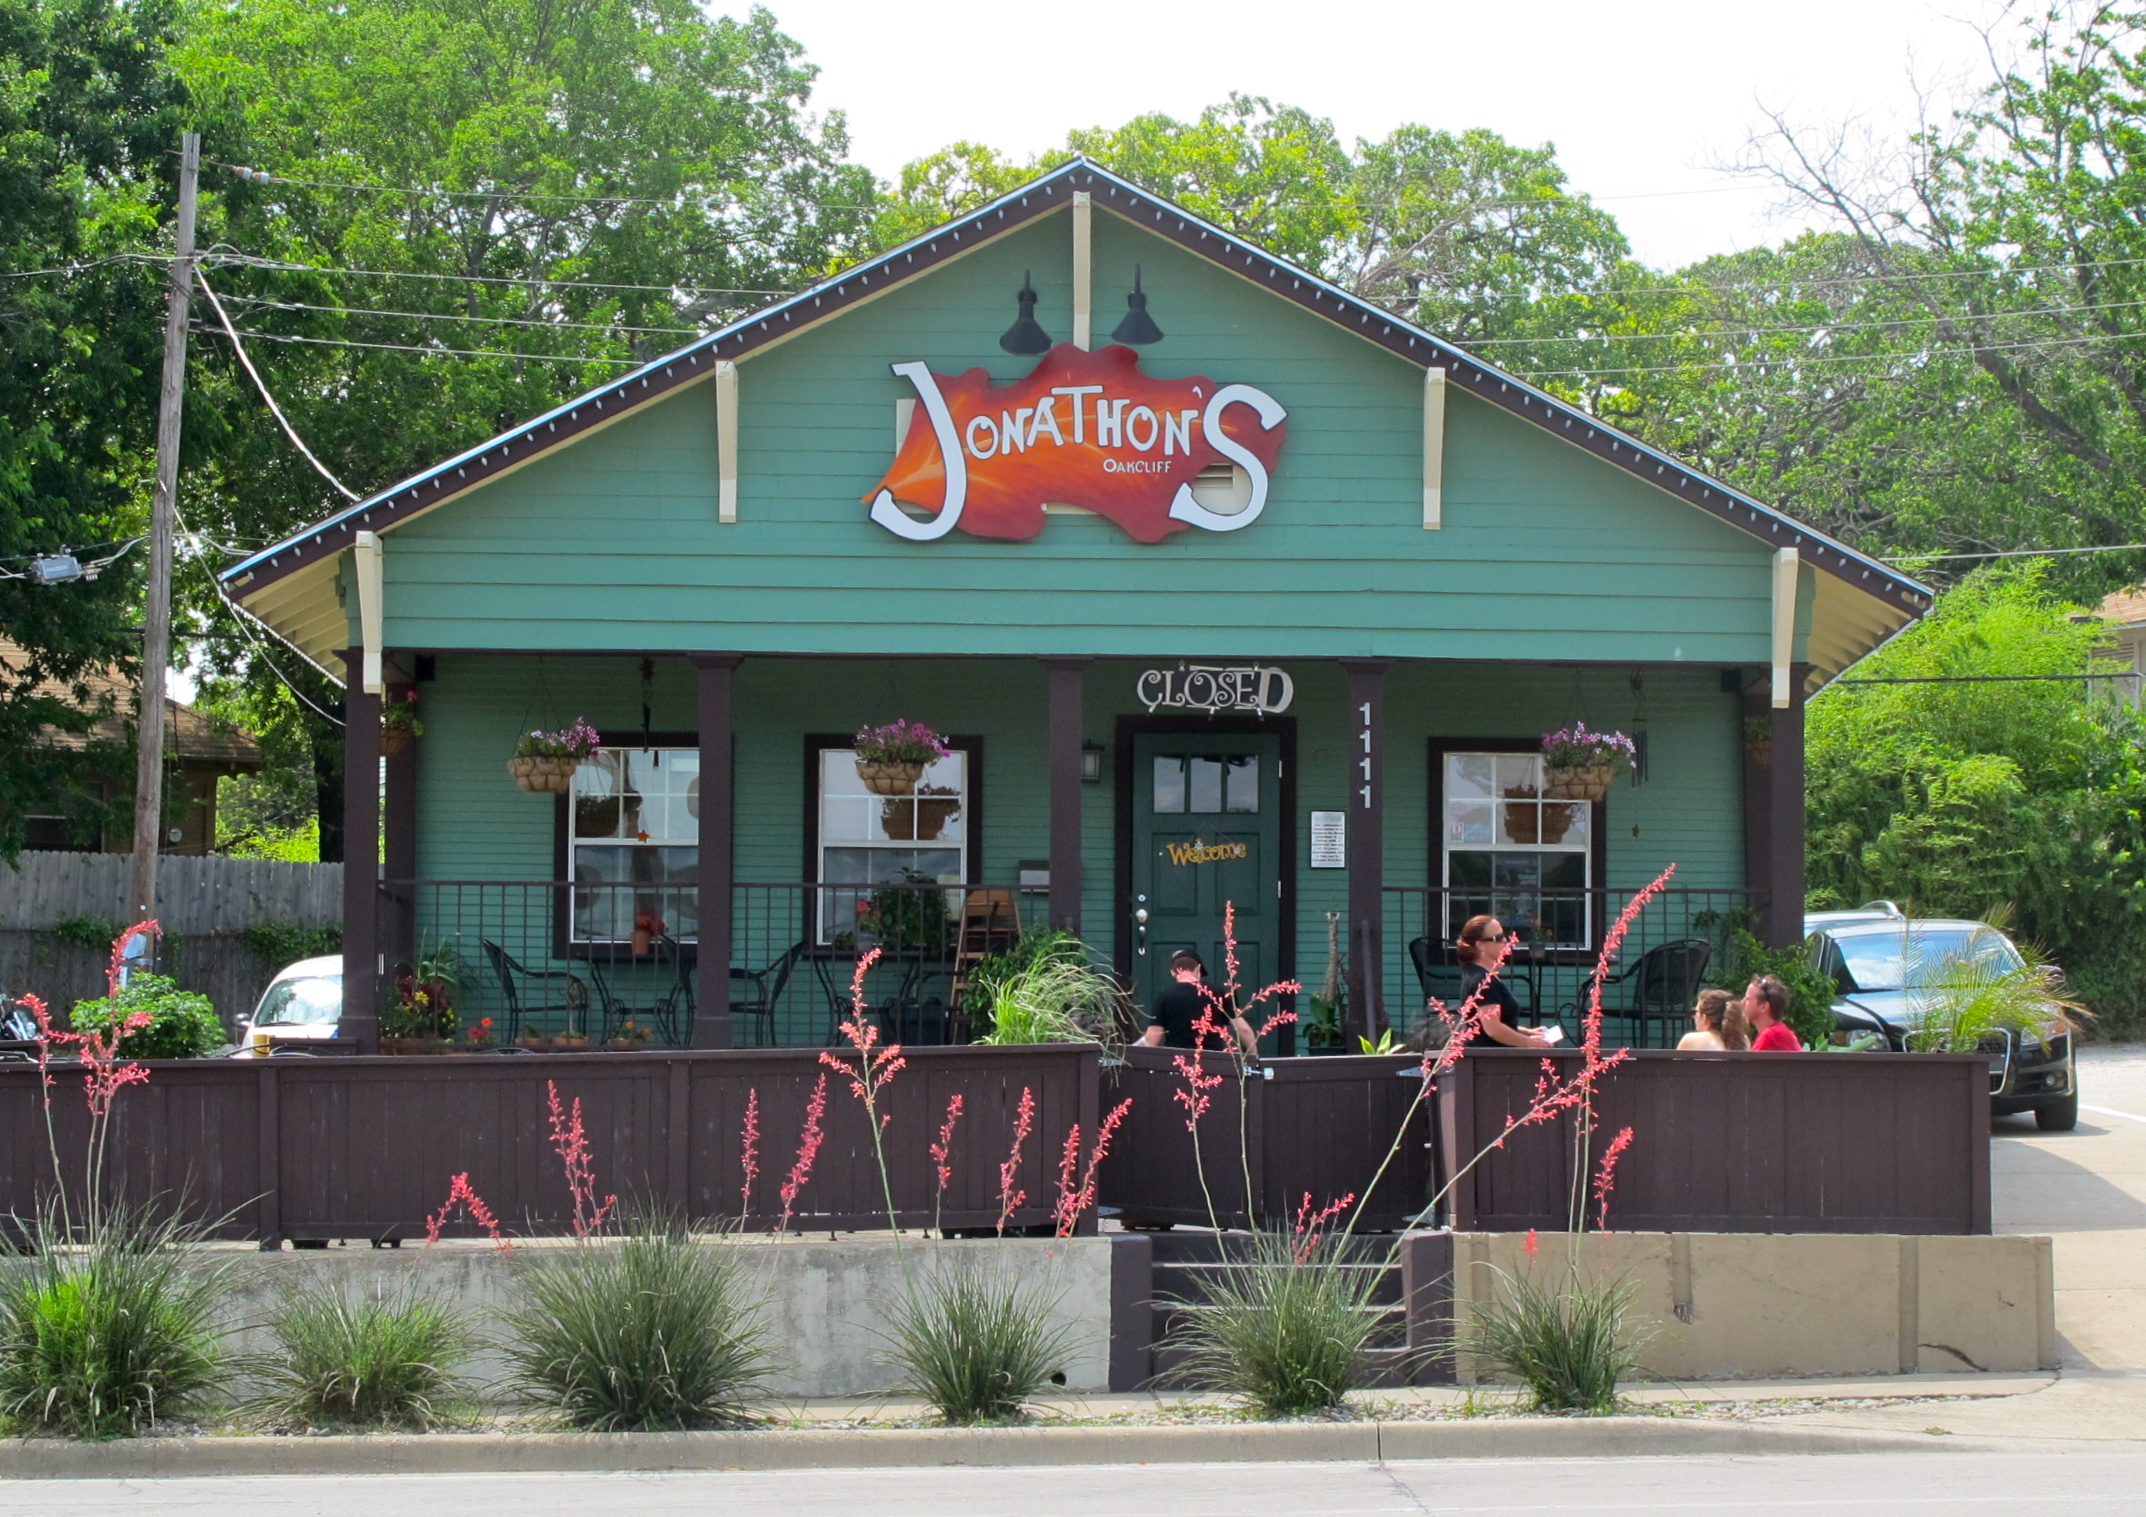 Jonathon's to close original location, move to Kel's Restaurant in North Dallas - Oak Cliff